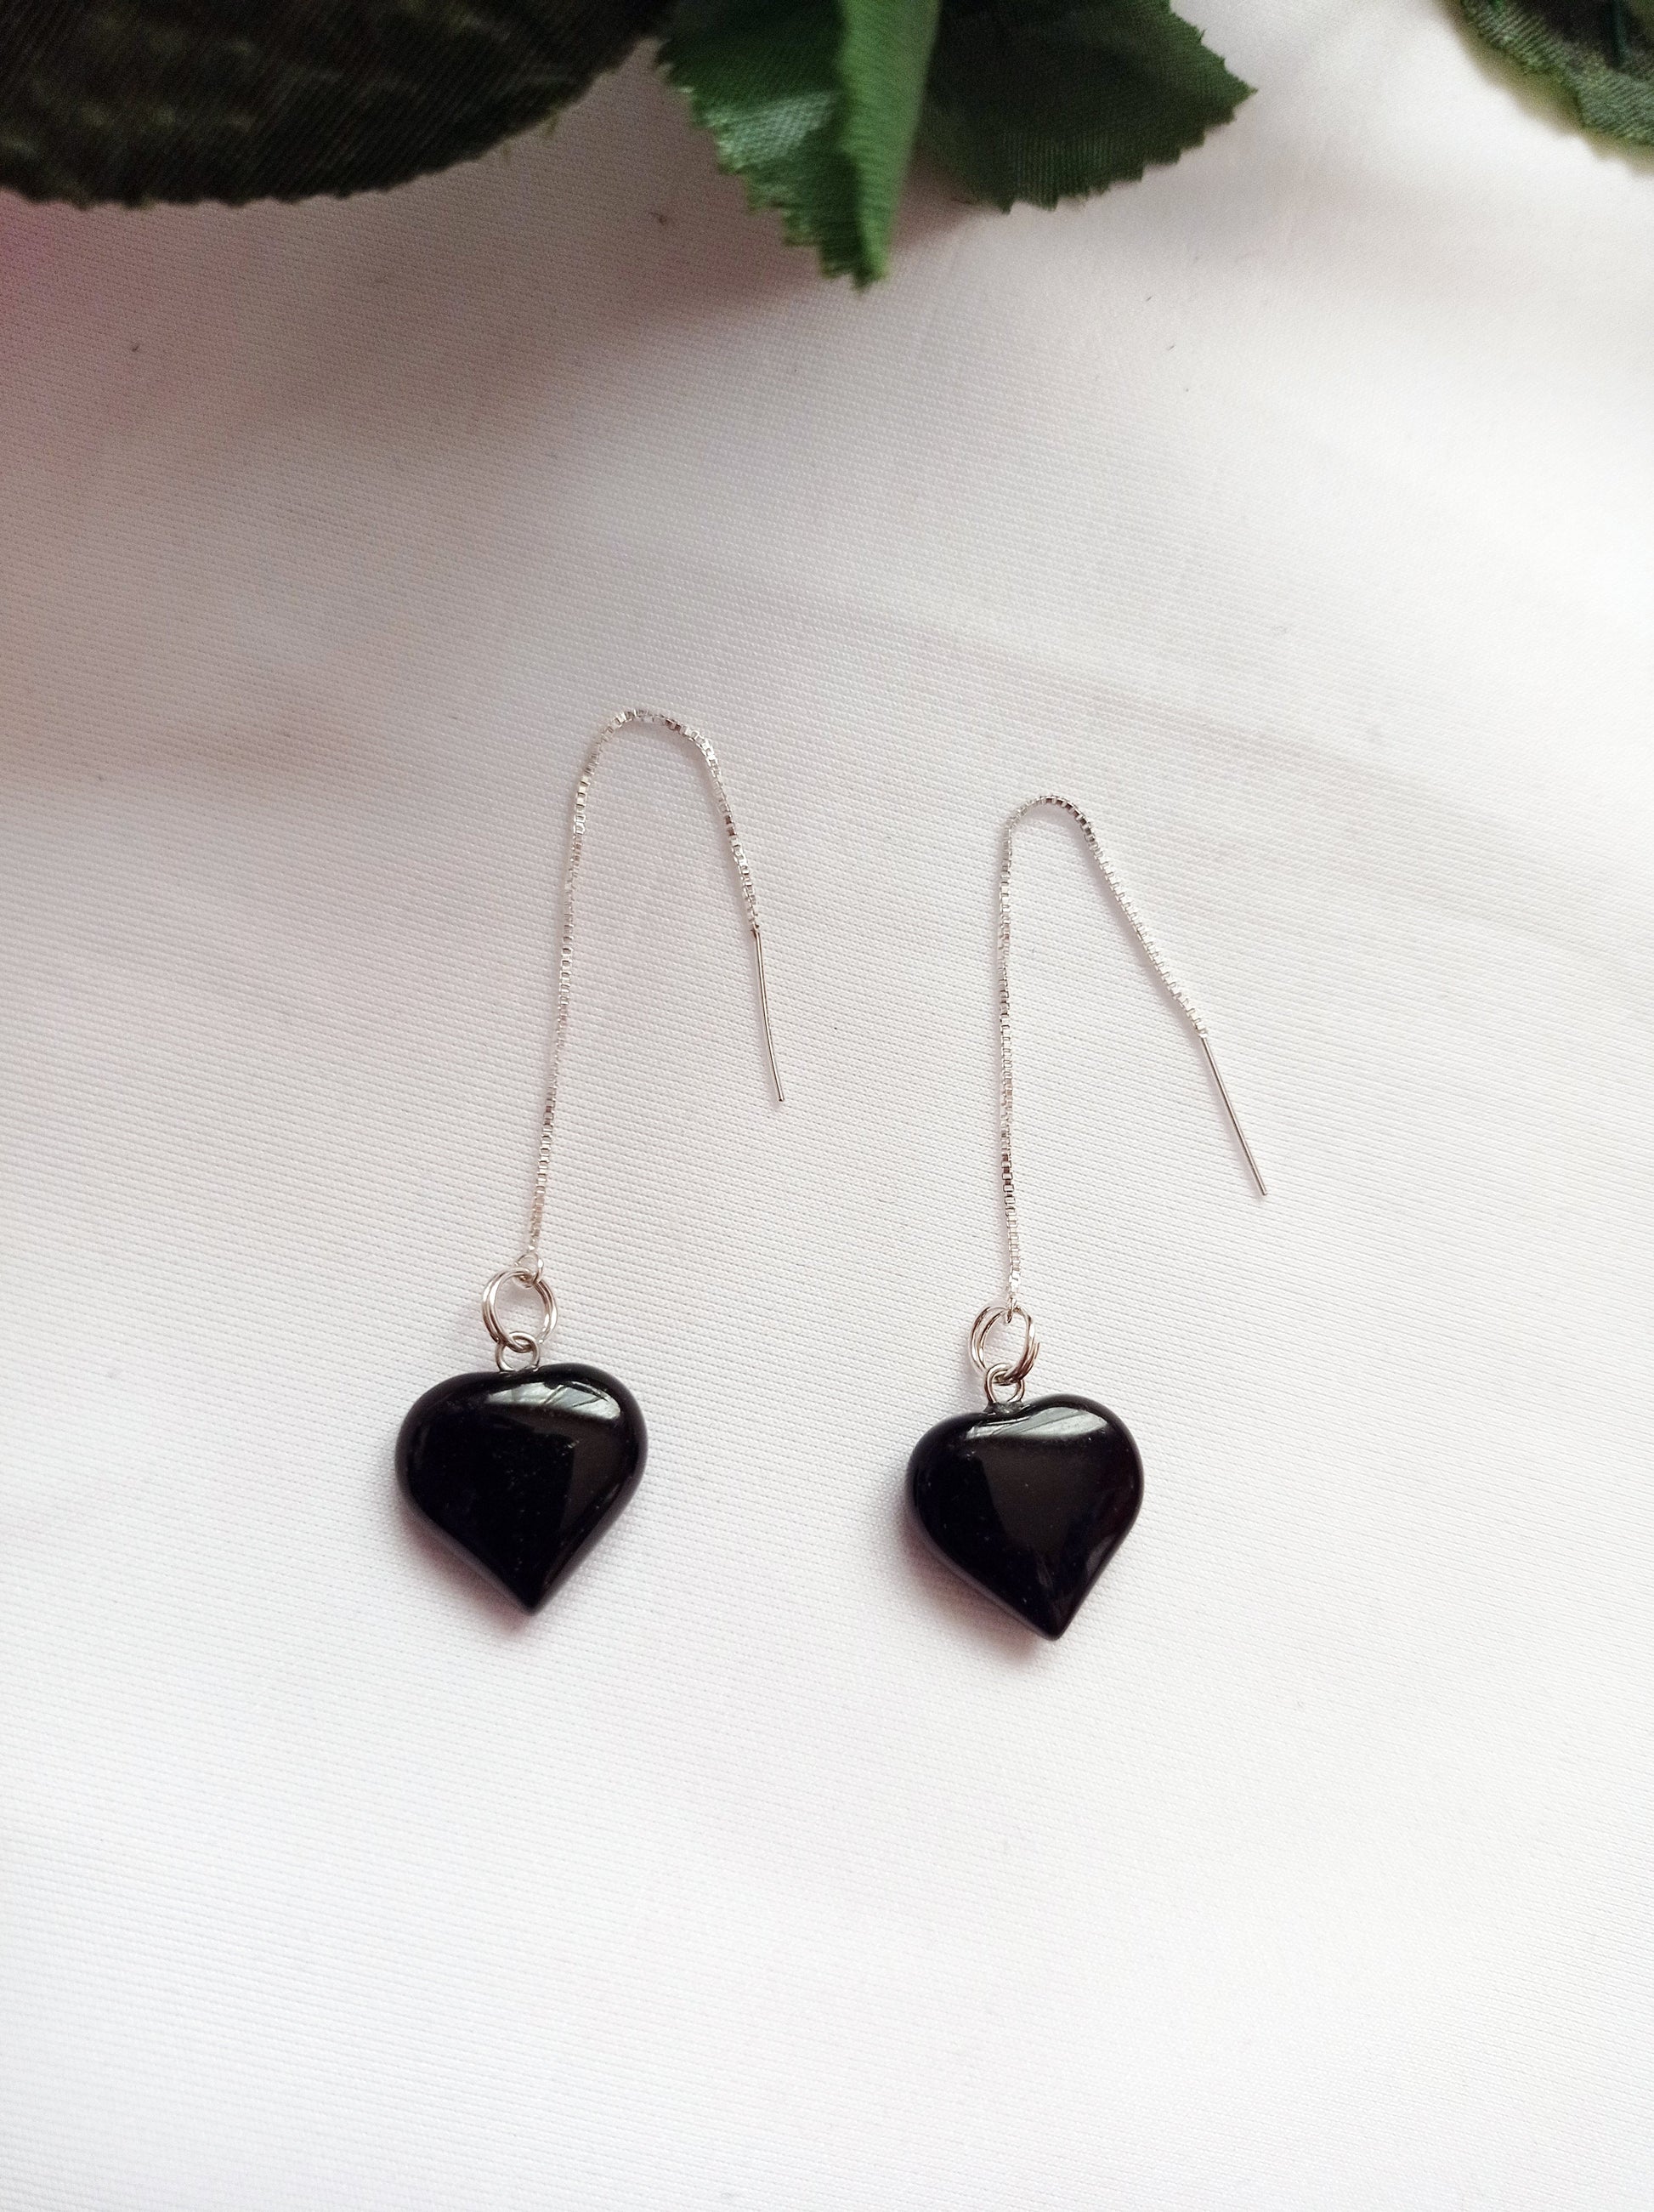 Onyx Heart Threader Earrings, Sterling Silver Earrings | by nlanlaVictory-2